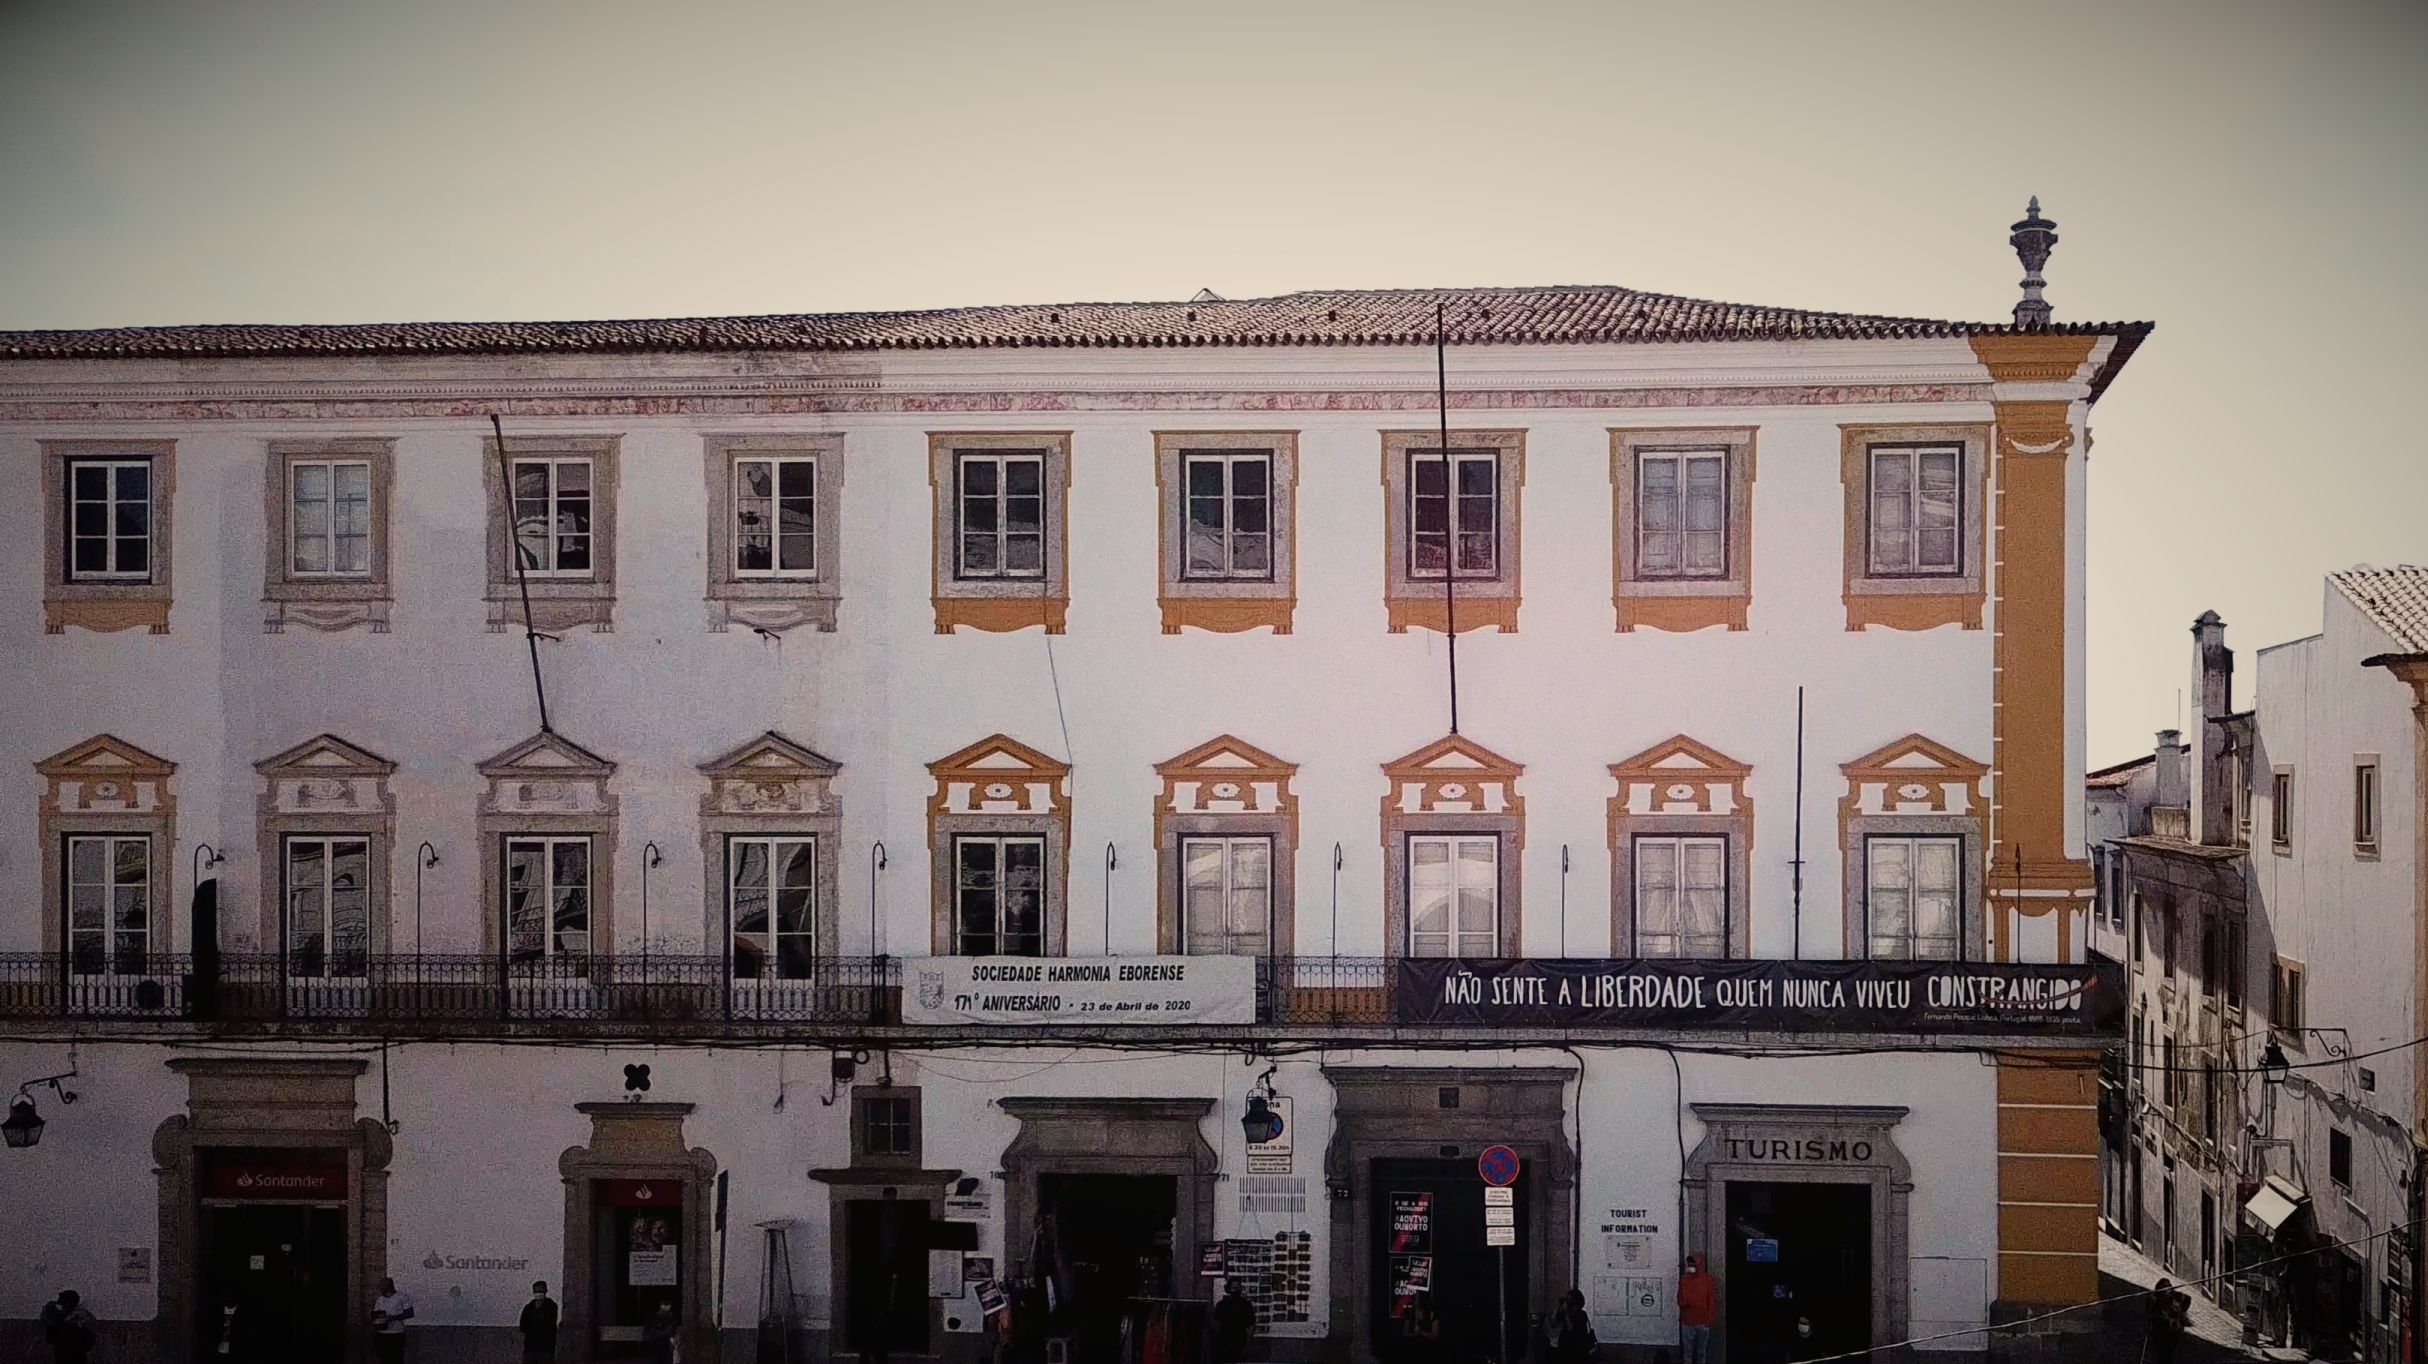 Fachada do edifício onde está instalada a Sociedade Harmonia Eborense, no centro de Évora